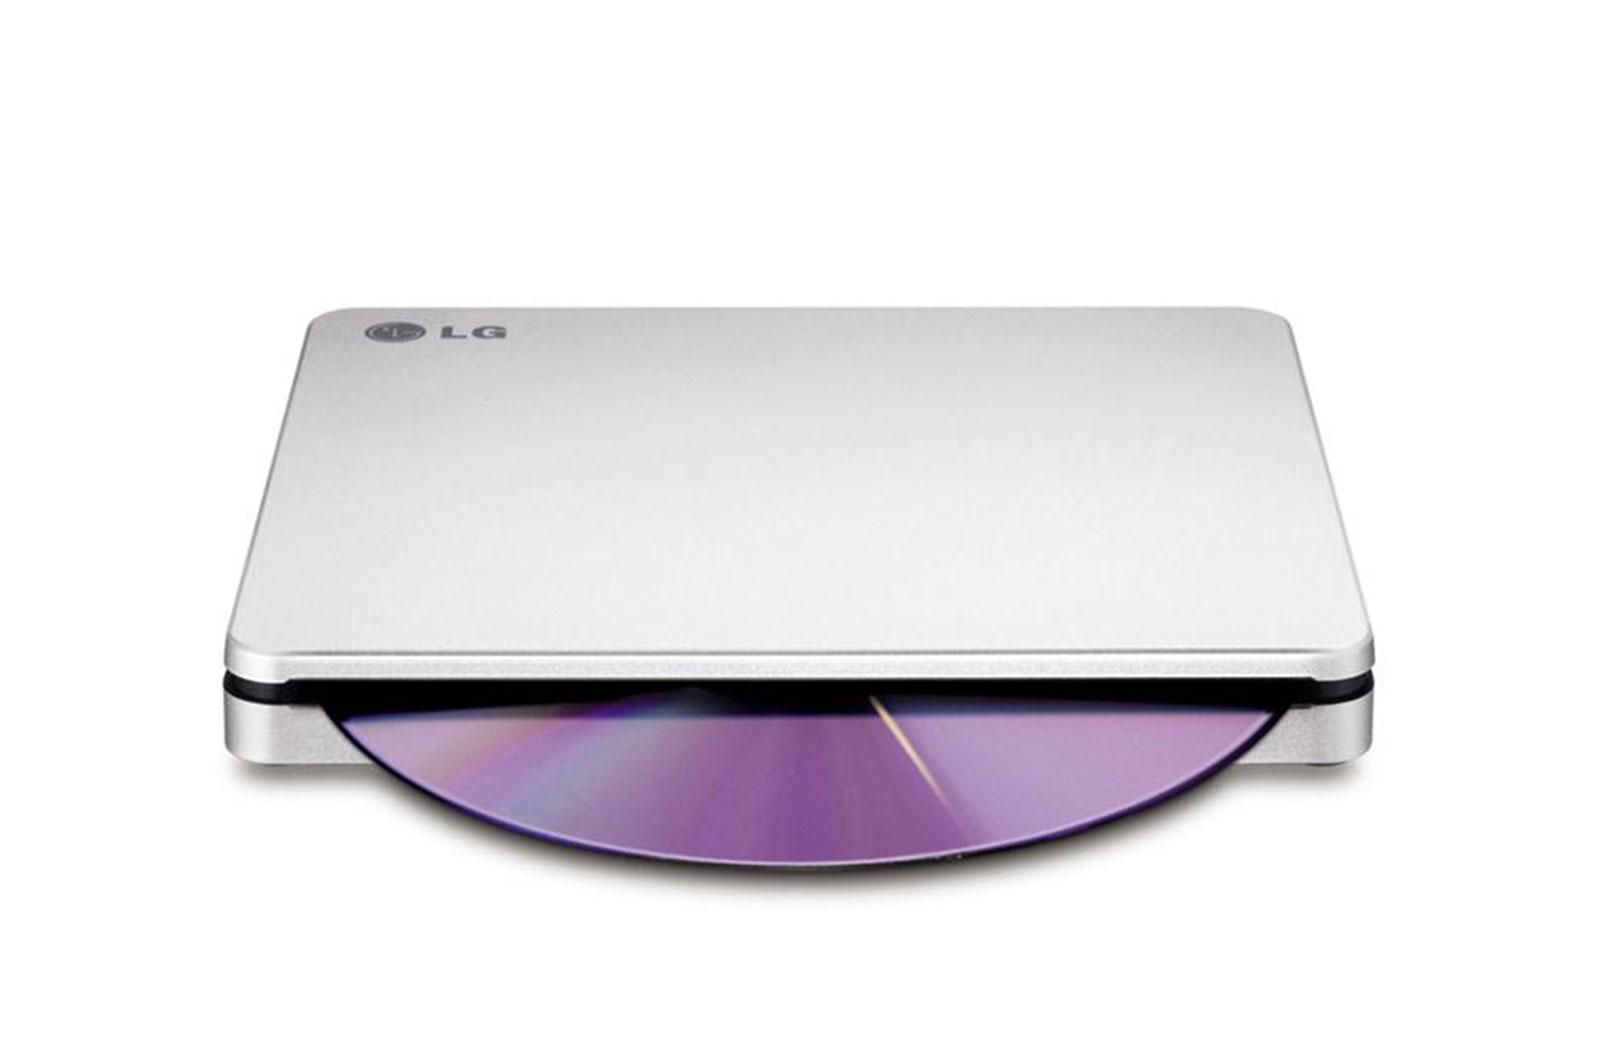 Ultra Slim Portable DVD-R Black Hitachi-LG GP60NB60.AUAE12B, GP60NB60 Series, DVD Write /Read Speed: 8x, CD Write/Read Speed: 24x, USB 2.0, Buffer 0.75MB, 144 mm x 137.5 mm x 14 mm._1